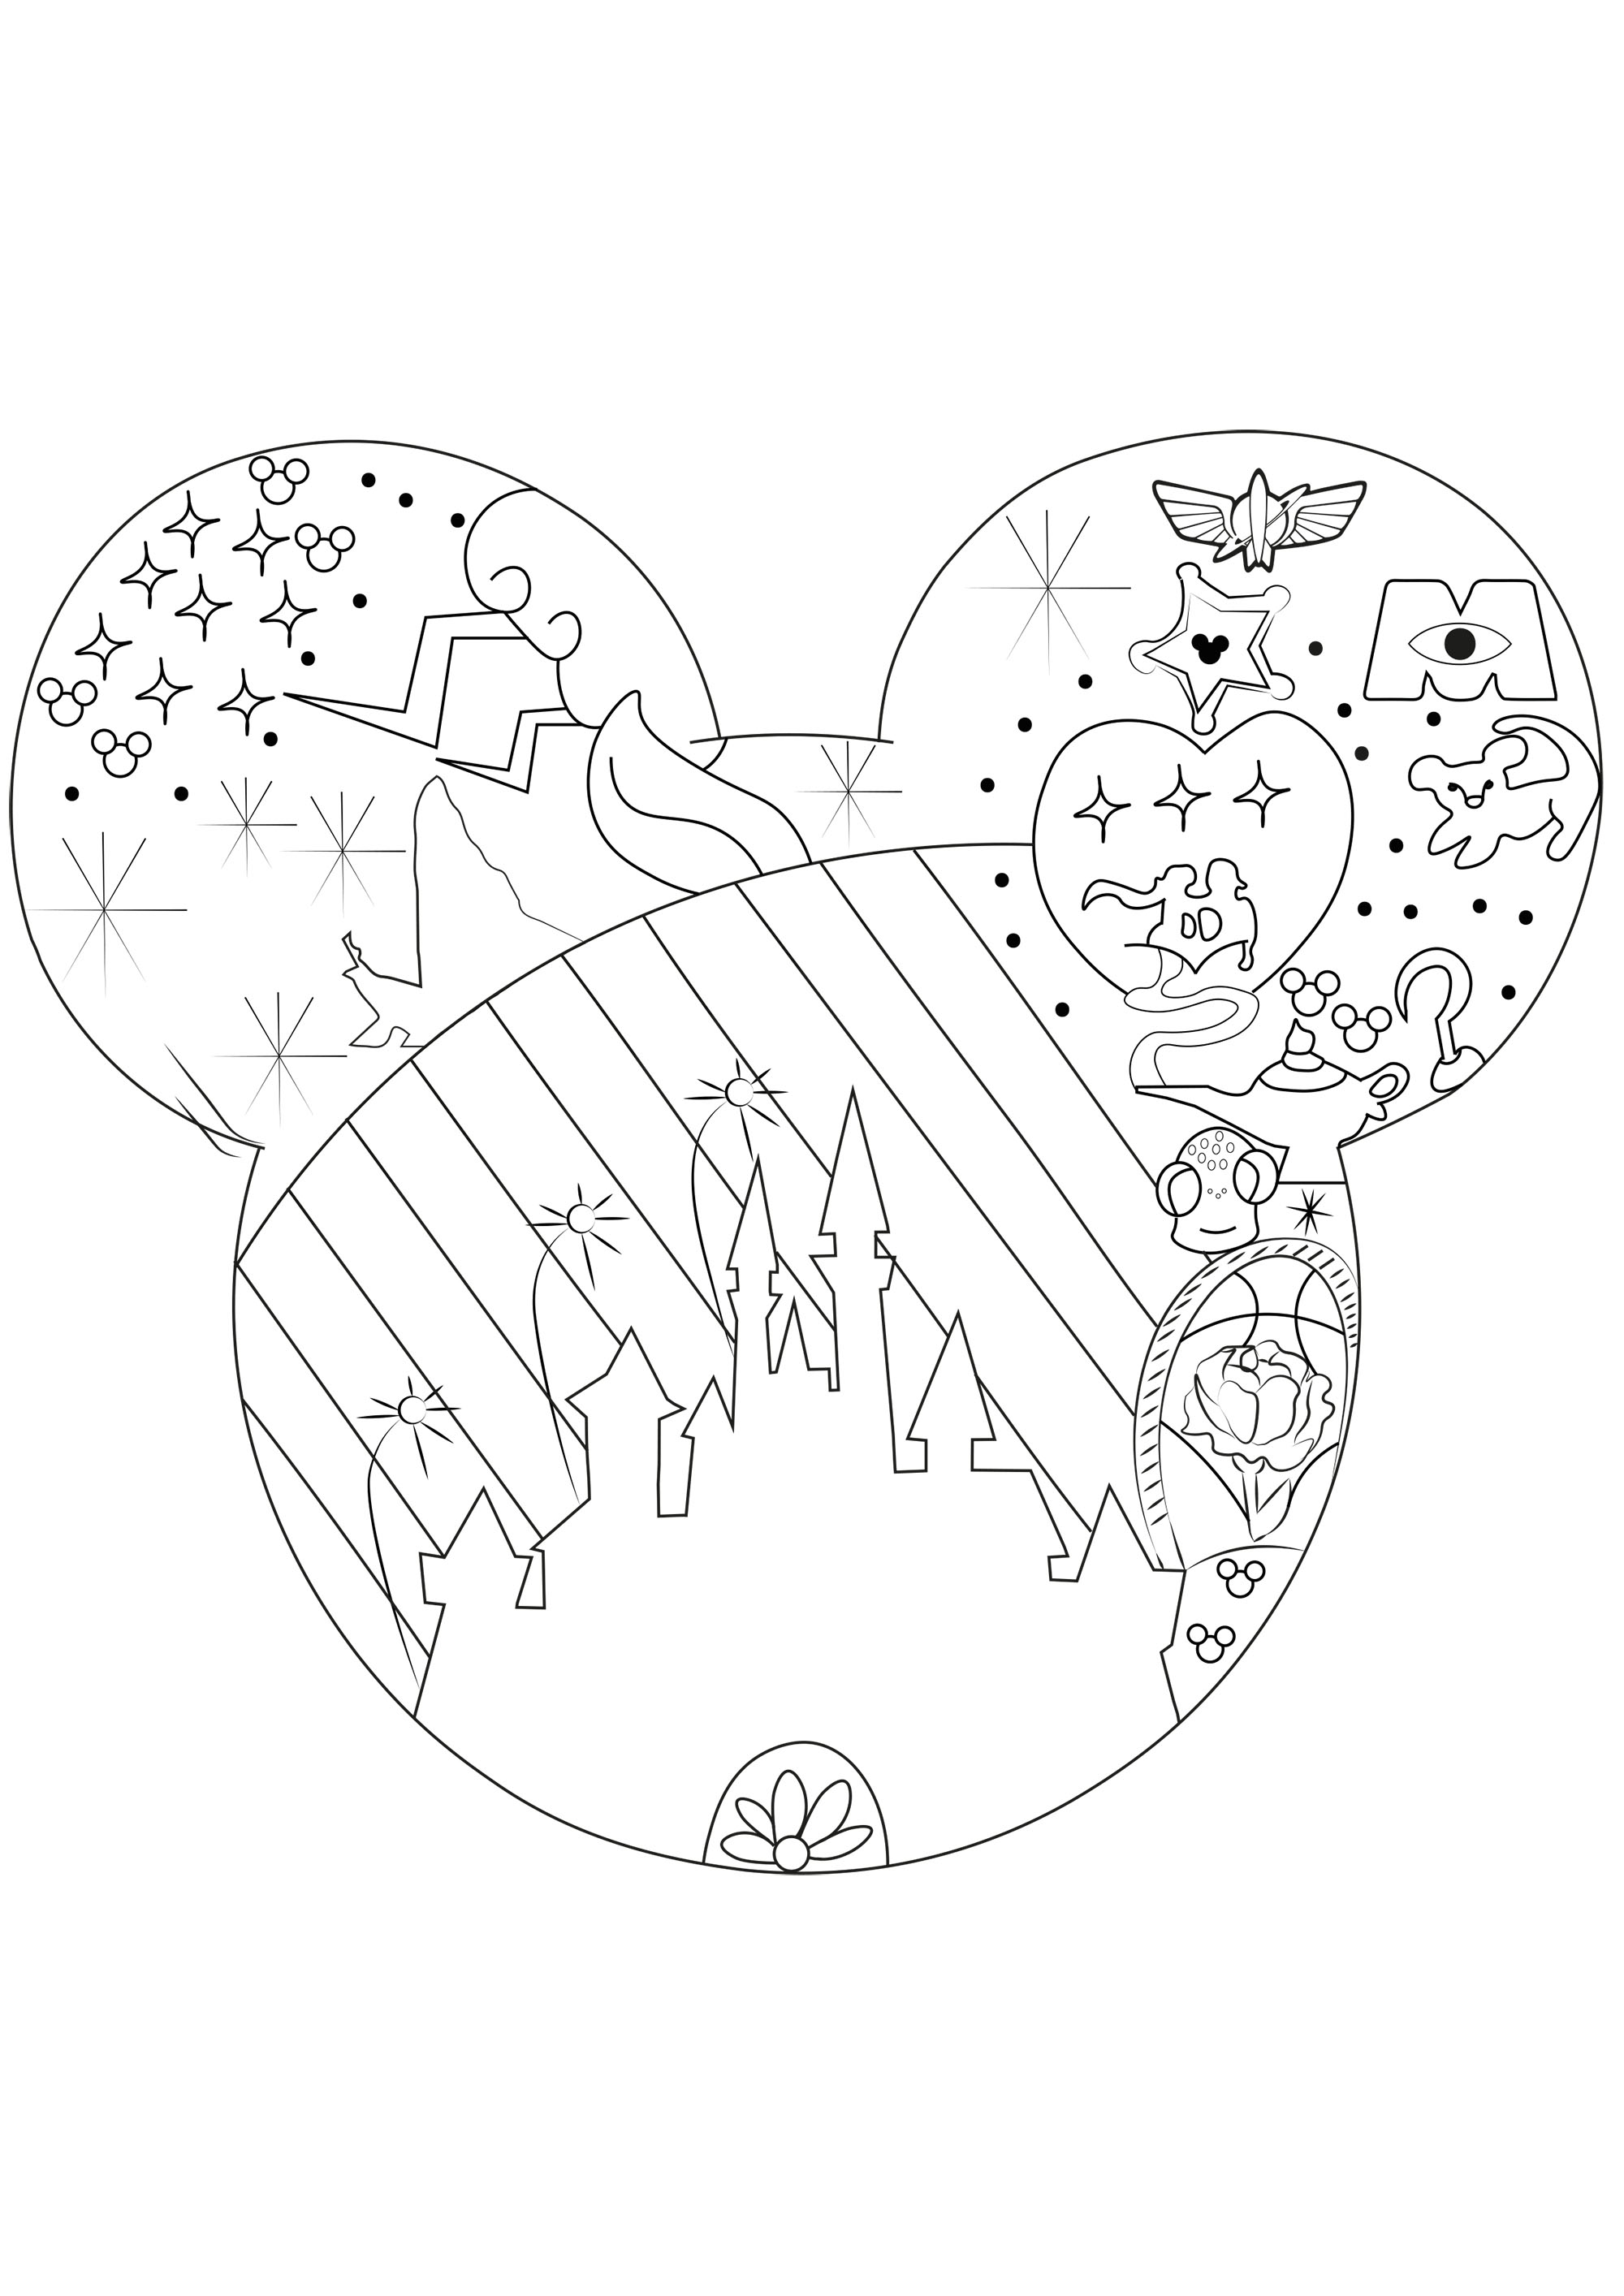 L'univers de Disney - Retour en enfance - Coloriages difficiles